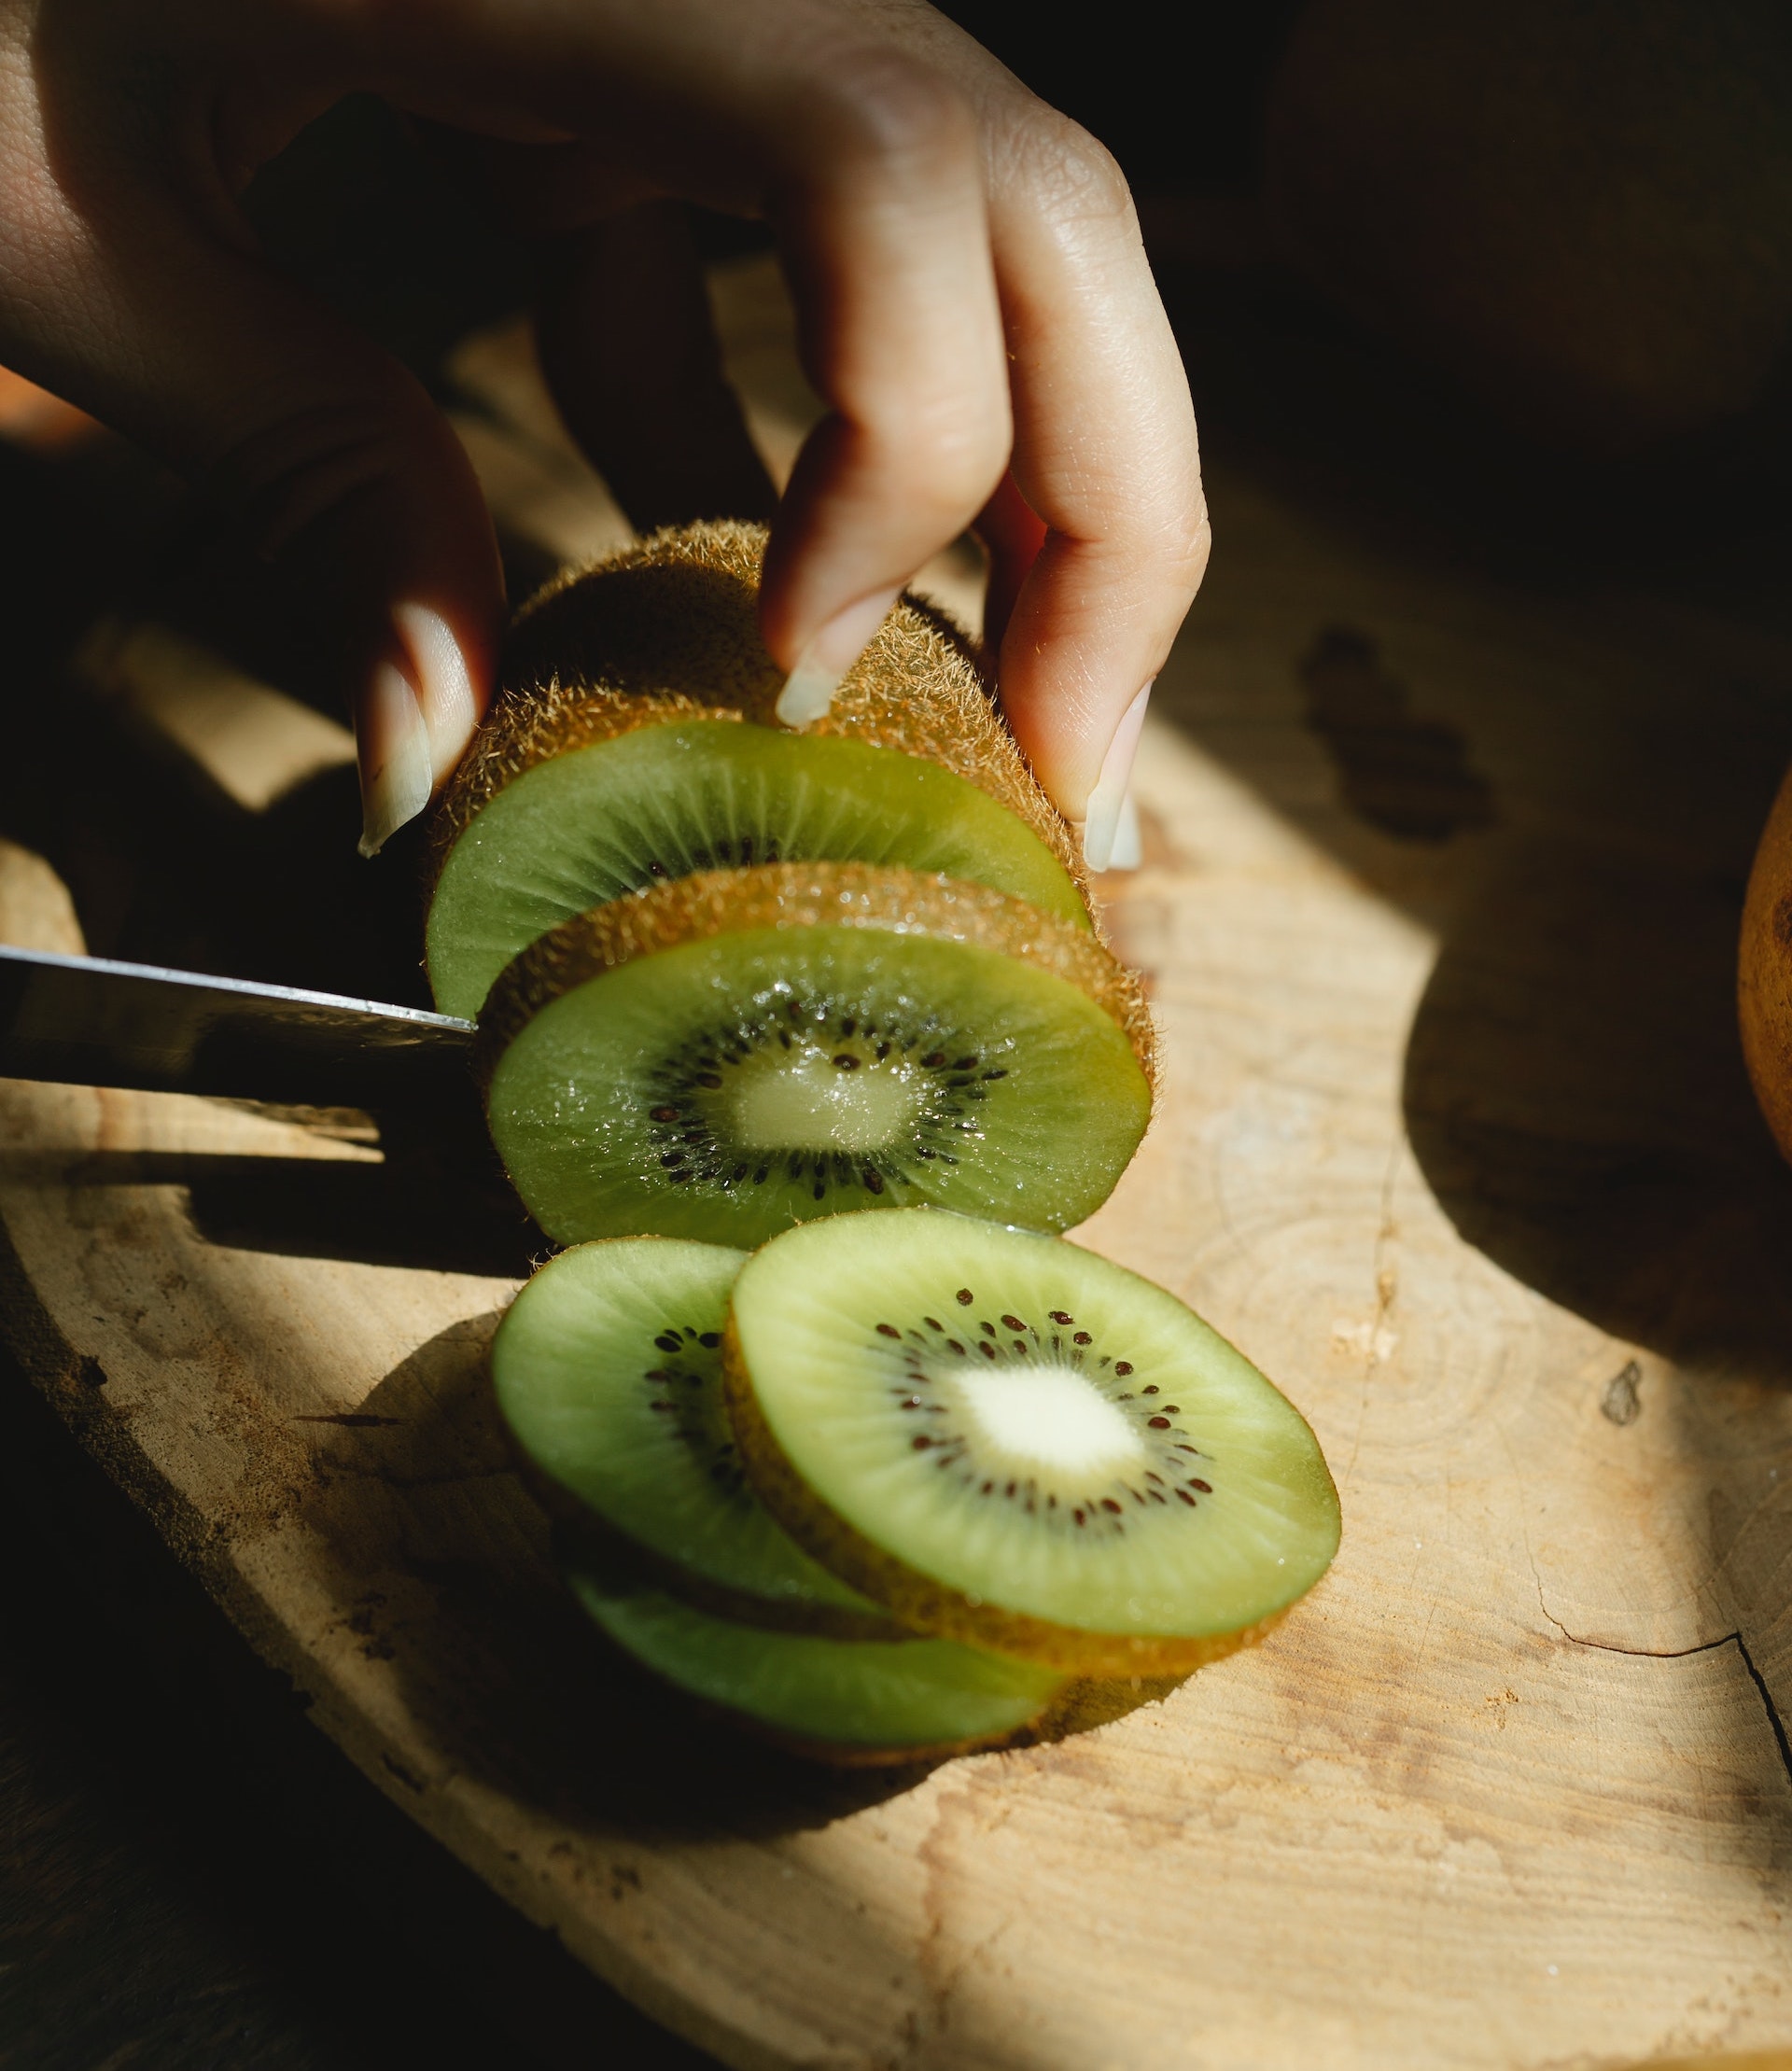 L'Italia è il secondo produttore mondiale di kiwi, un antico frutto cinese oggi molto diffuso nel nostro paese: proprietà, benefici e controindicazioni.